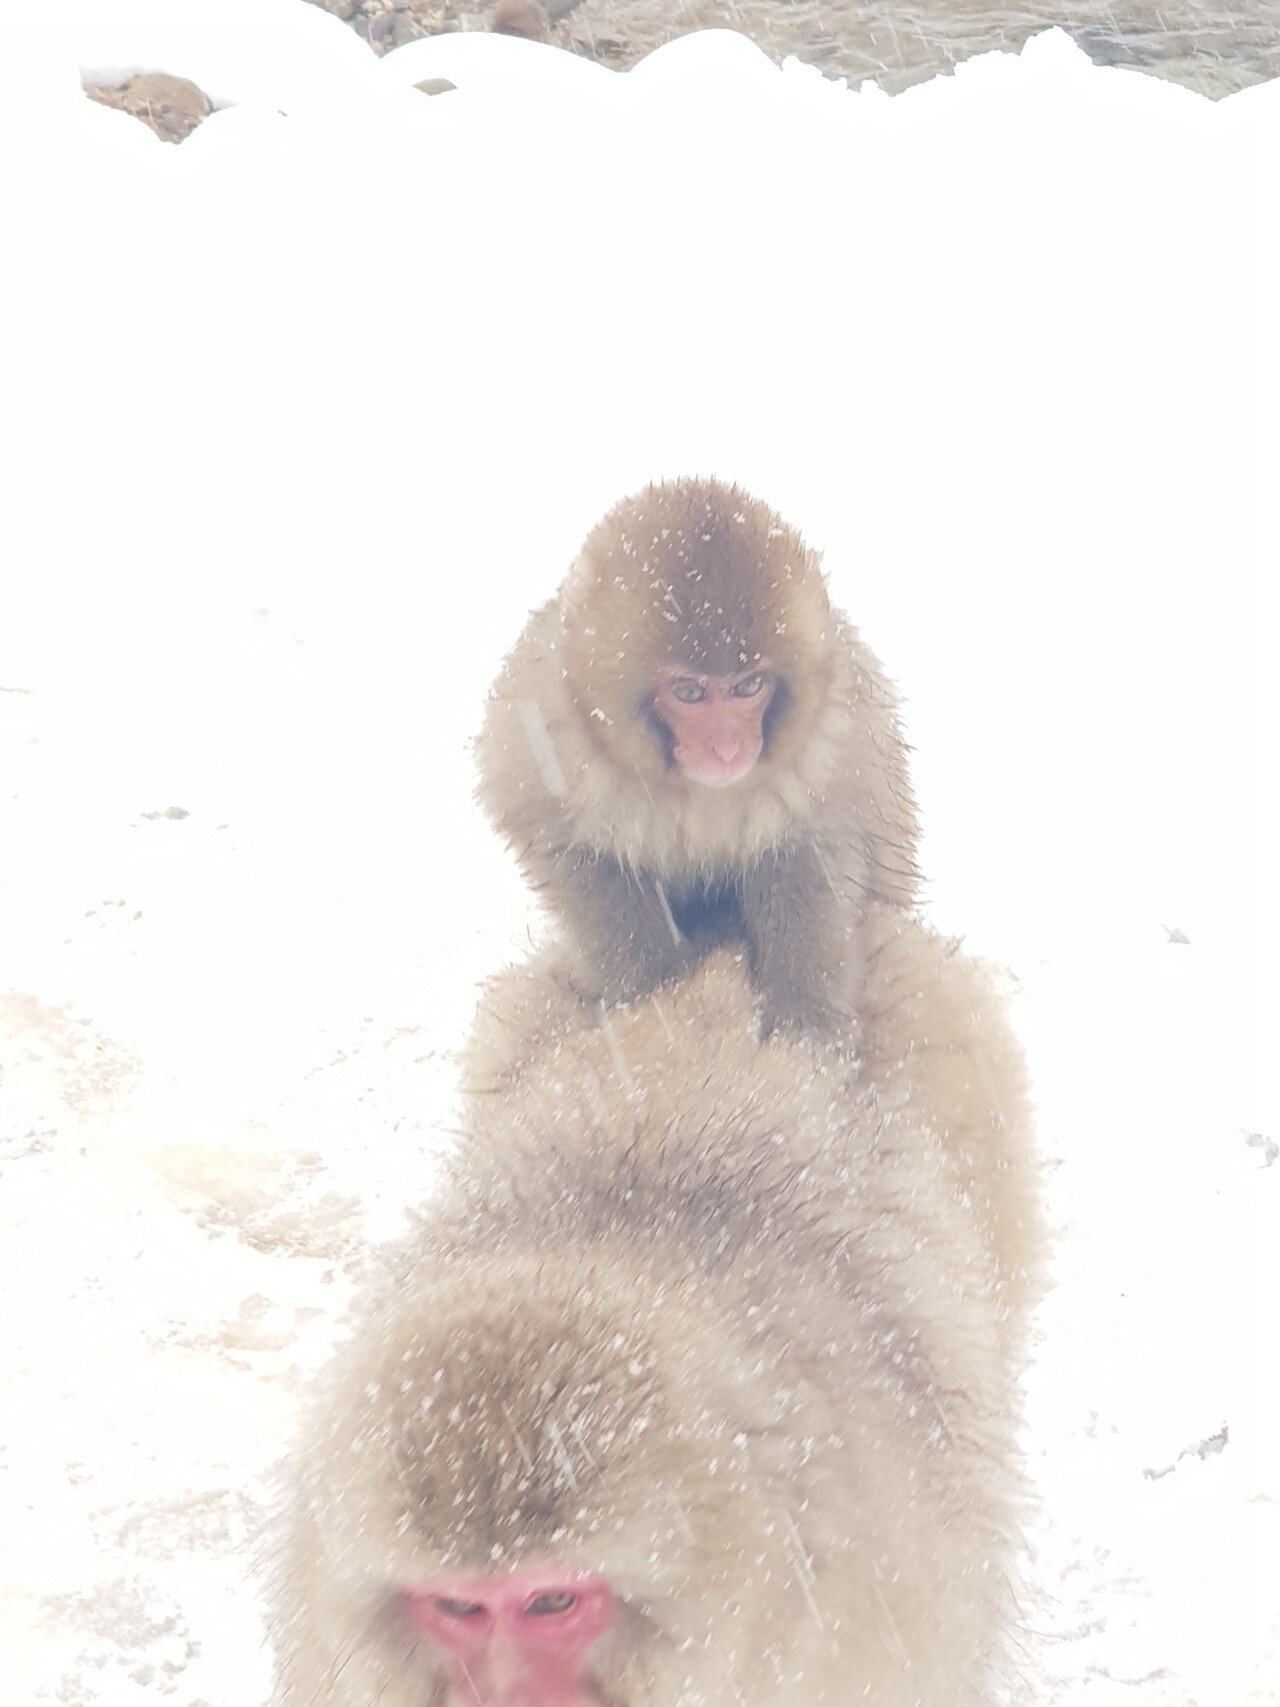 20190131_142104.jpg 눈으로 덮인 겨울 니가타&나가노 여행기(2) (스압?)